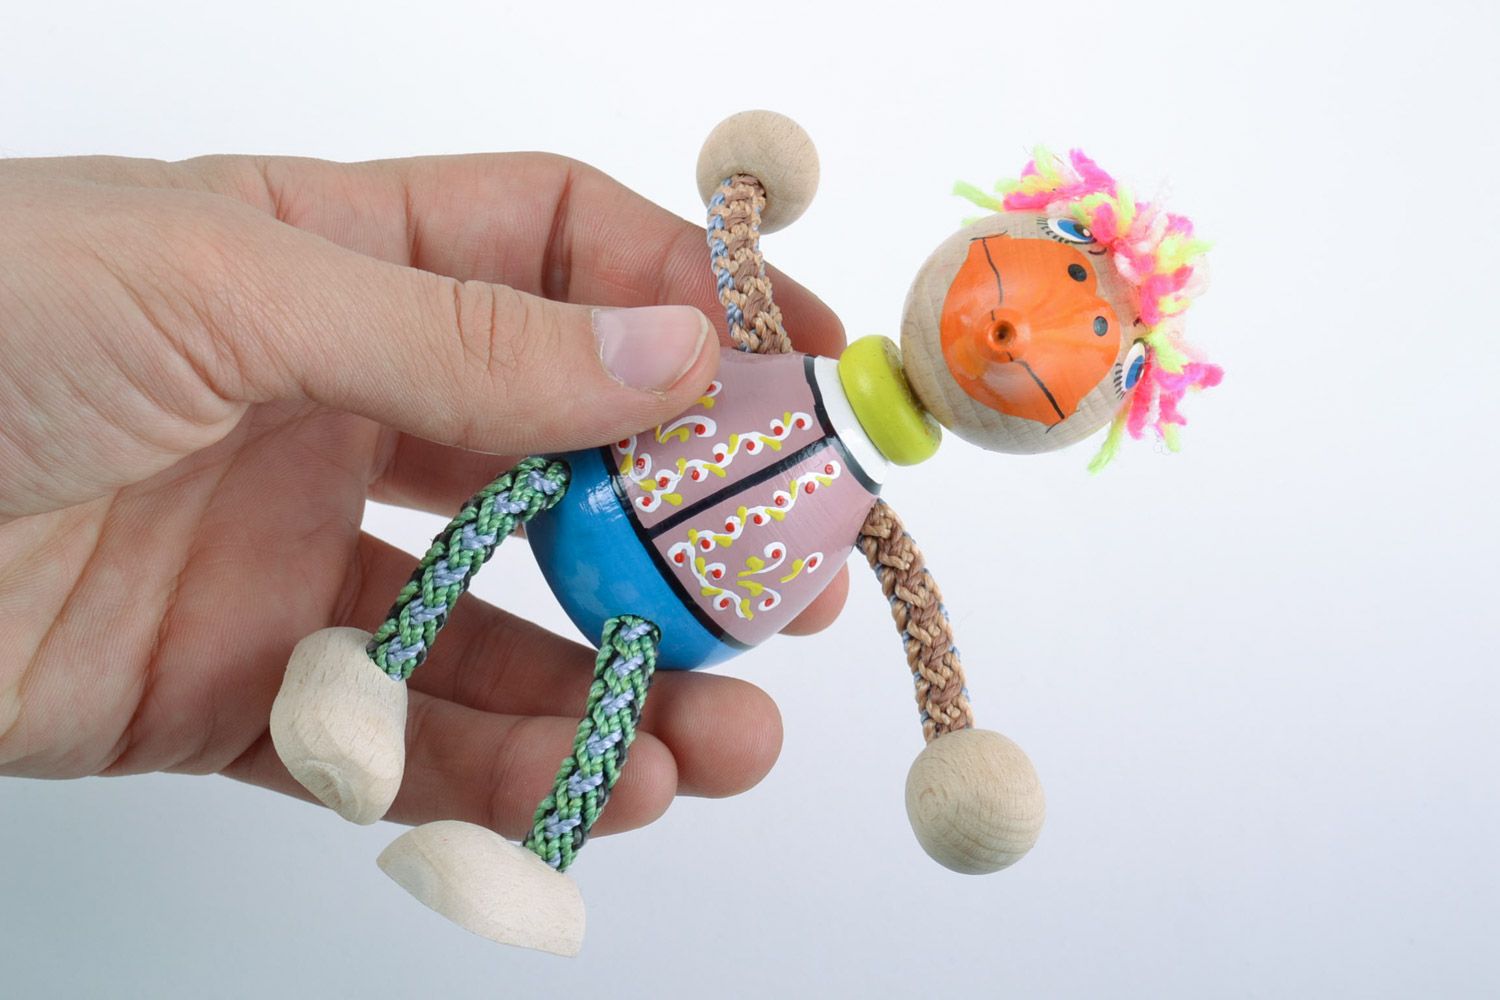 Красочная деревянная игрушка в виде утки ручной работы расписанная эко красками фото 2